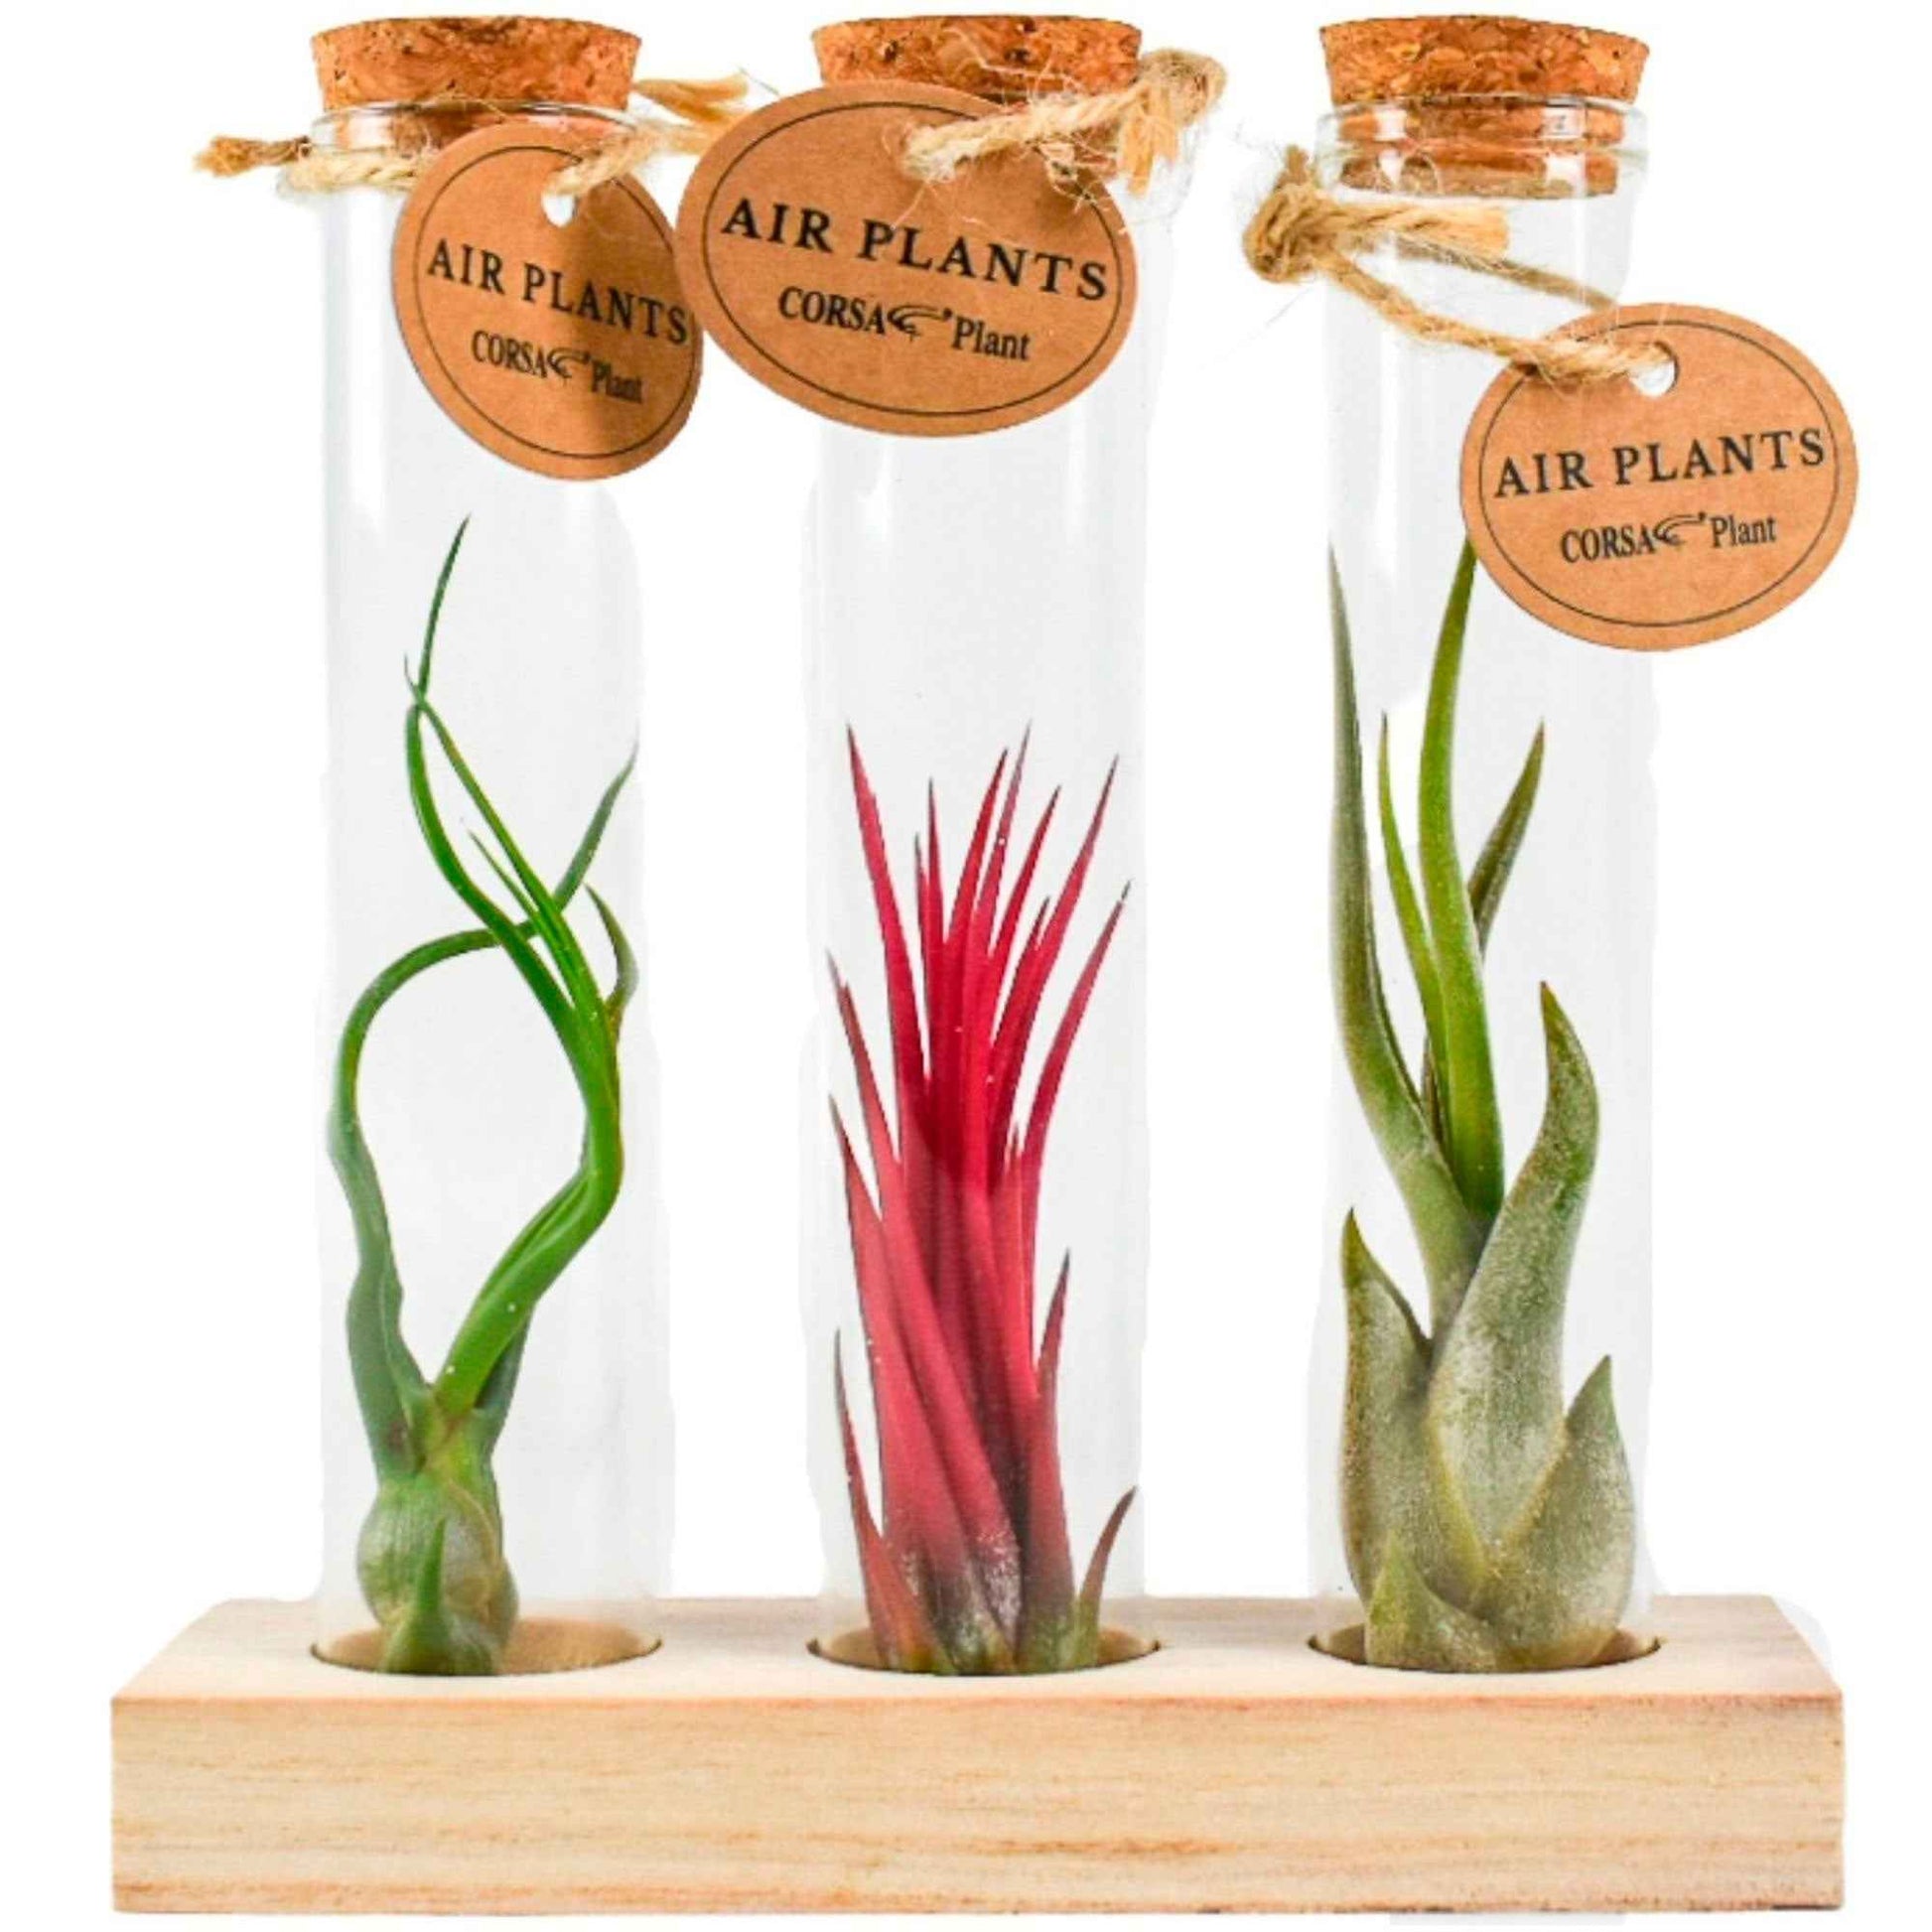 Tillandsia Mischung in Glasbehältern - Tillandsia ionantha, tillandsia caput-medusae, tillandsia bulbosa - Zimmerpflanzen